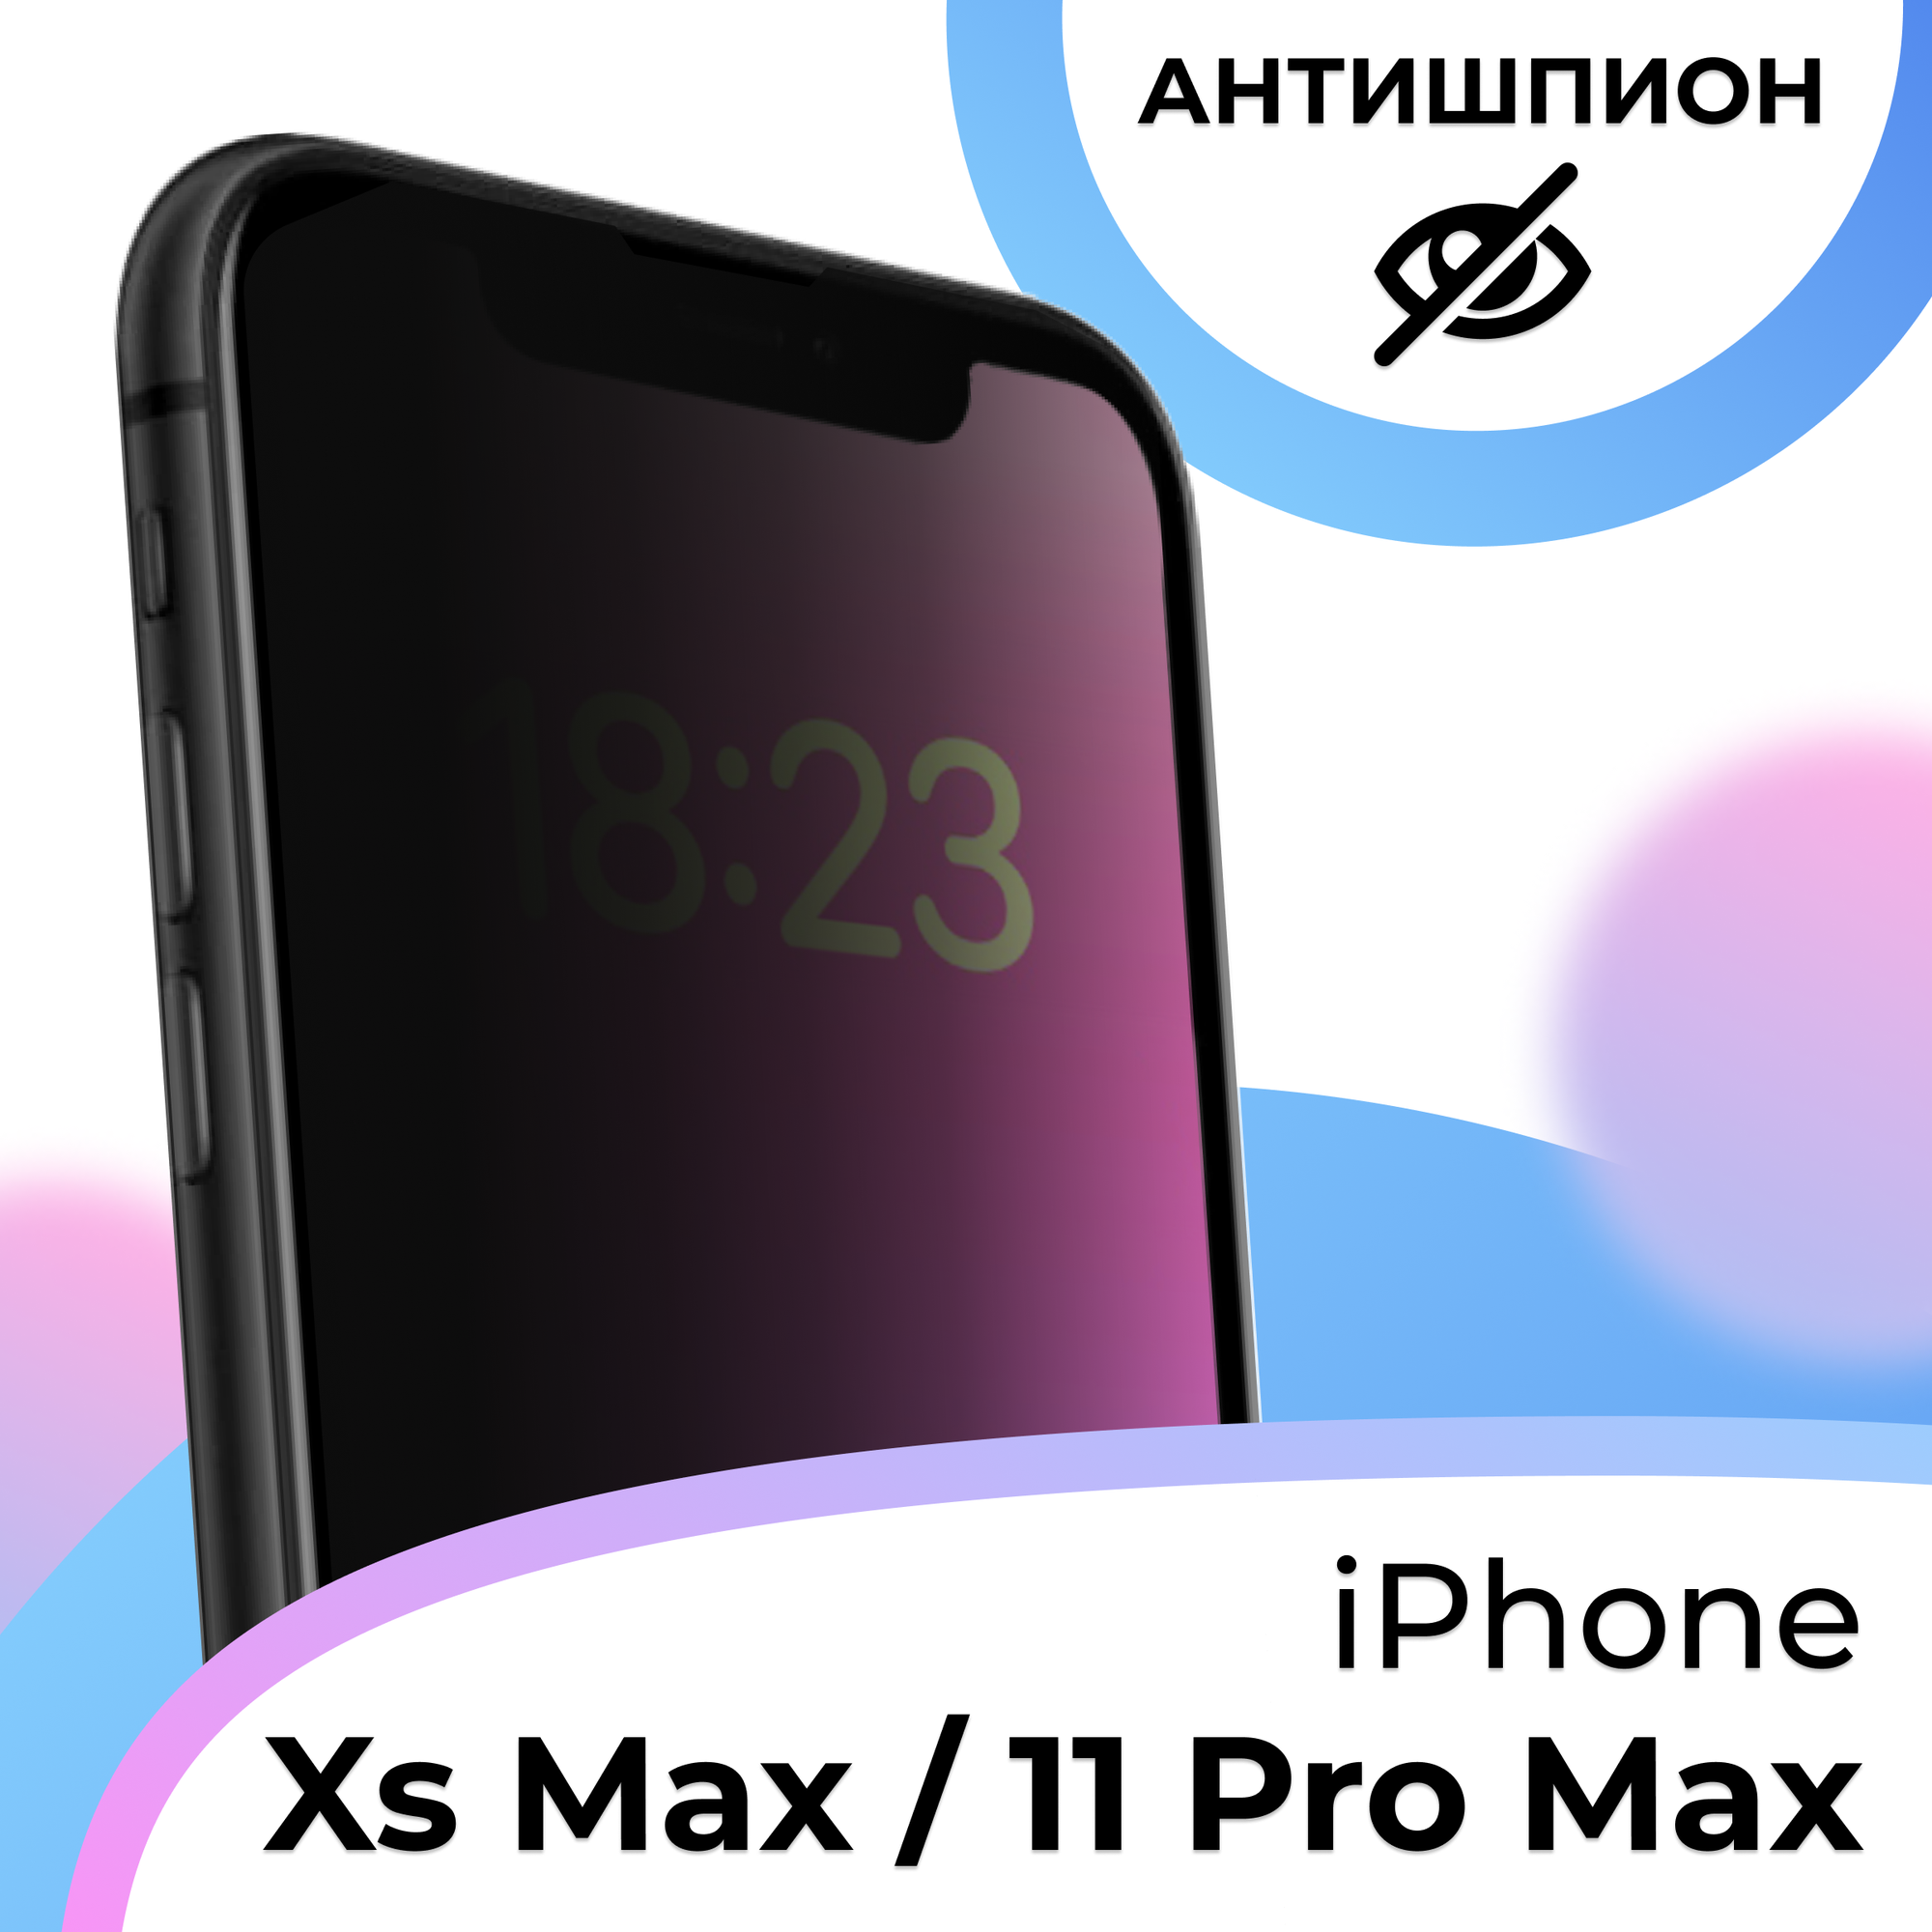 Противоударное стекло Антишпион для смартфона Apple iPhone XS Max и iPhone 11 Pro Max / Защитное стекло на Эпл Айфон ХС Макс и Айфон 11 Про Макс